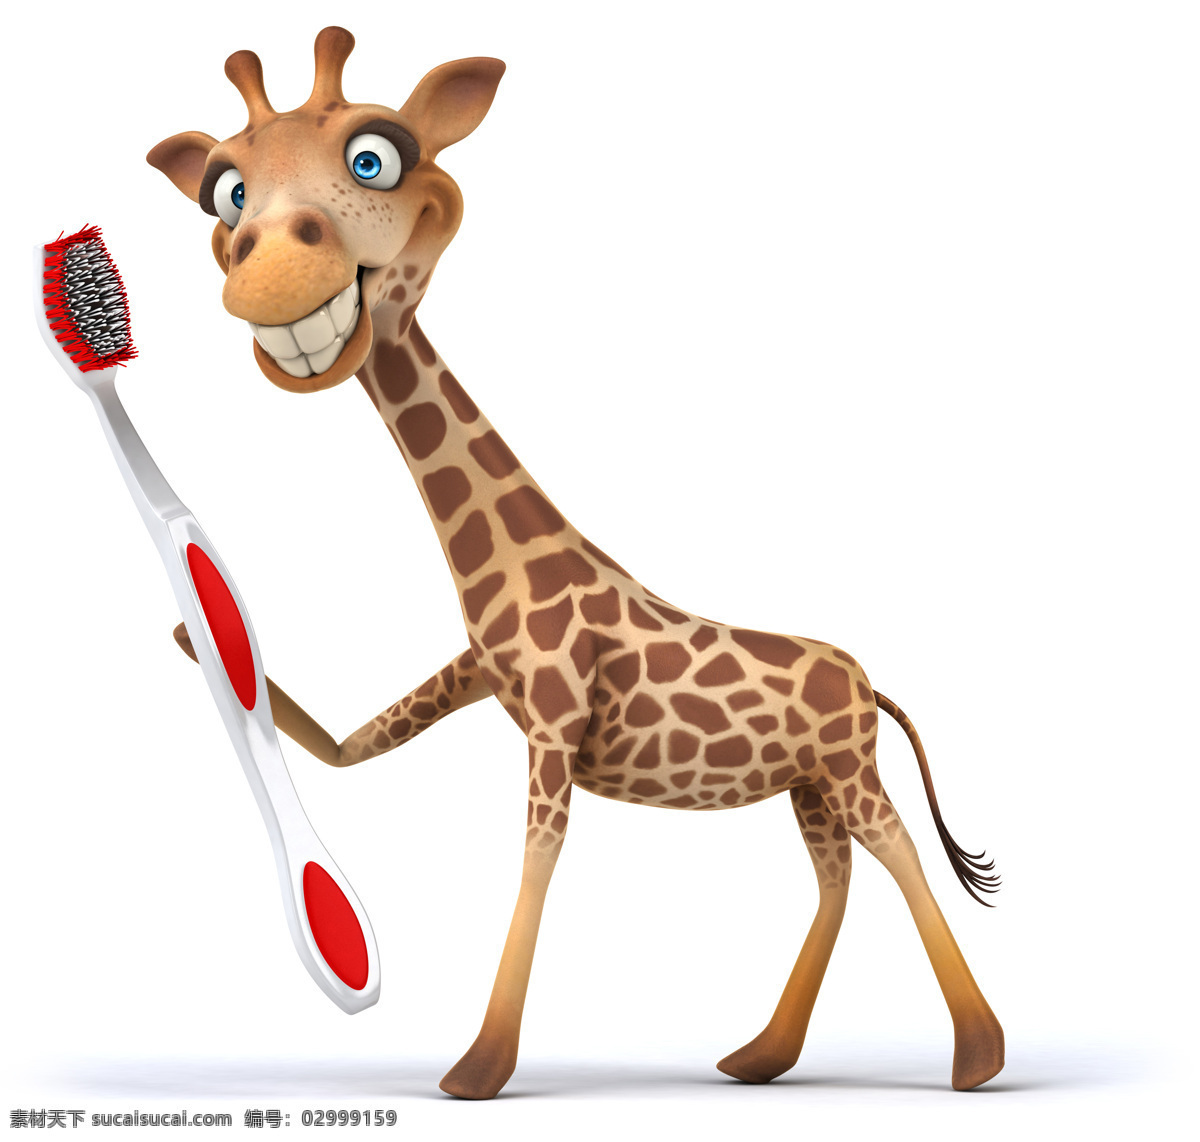 可爱 长颈鹿 卡通长颈鹿 牙刷 健康 动物 动物设计 陆地动物 生物世界 可爱的长颈鹿